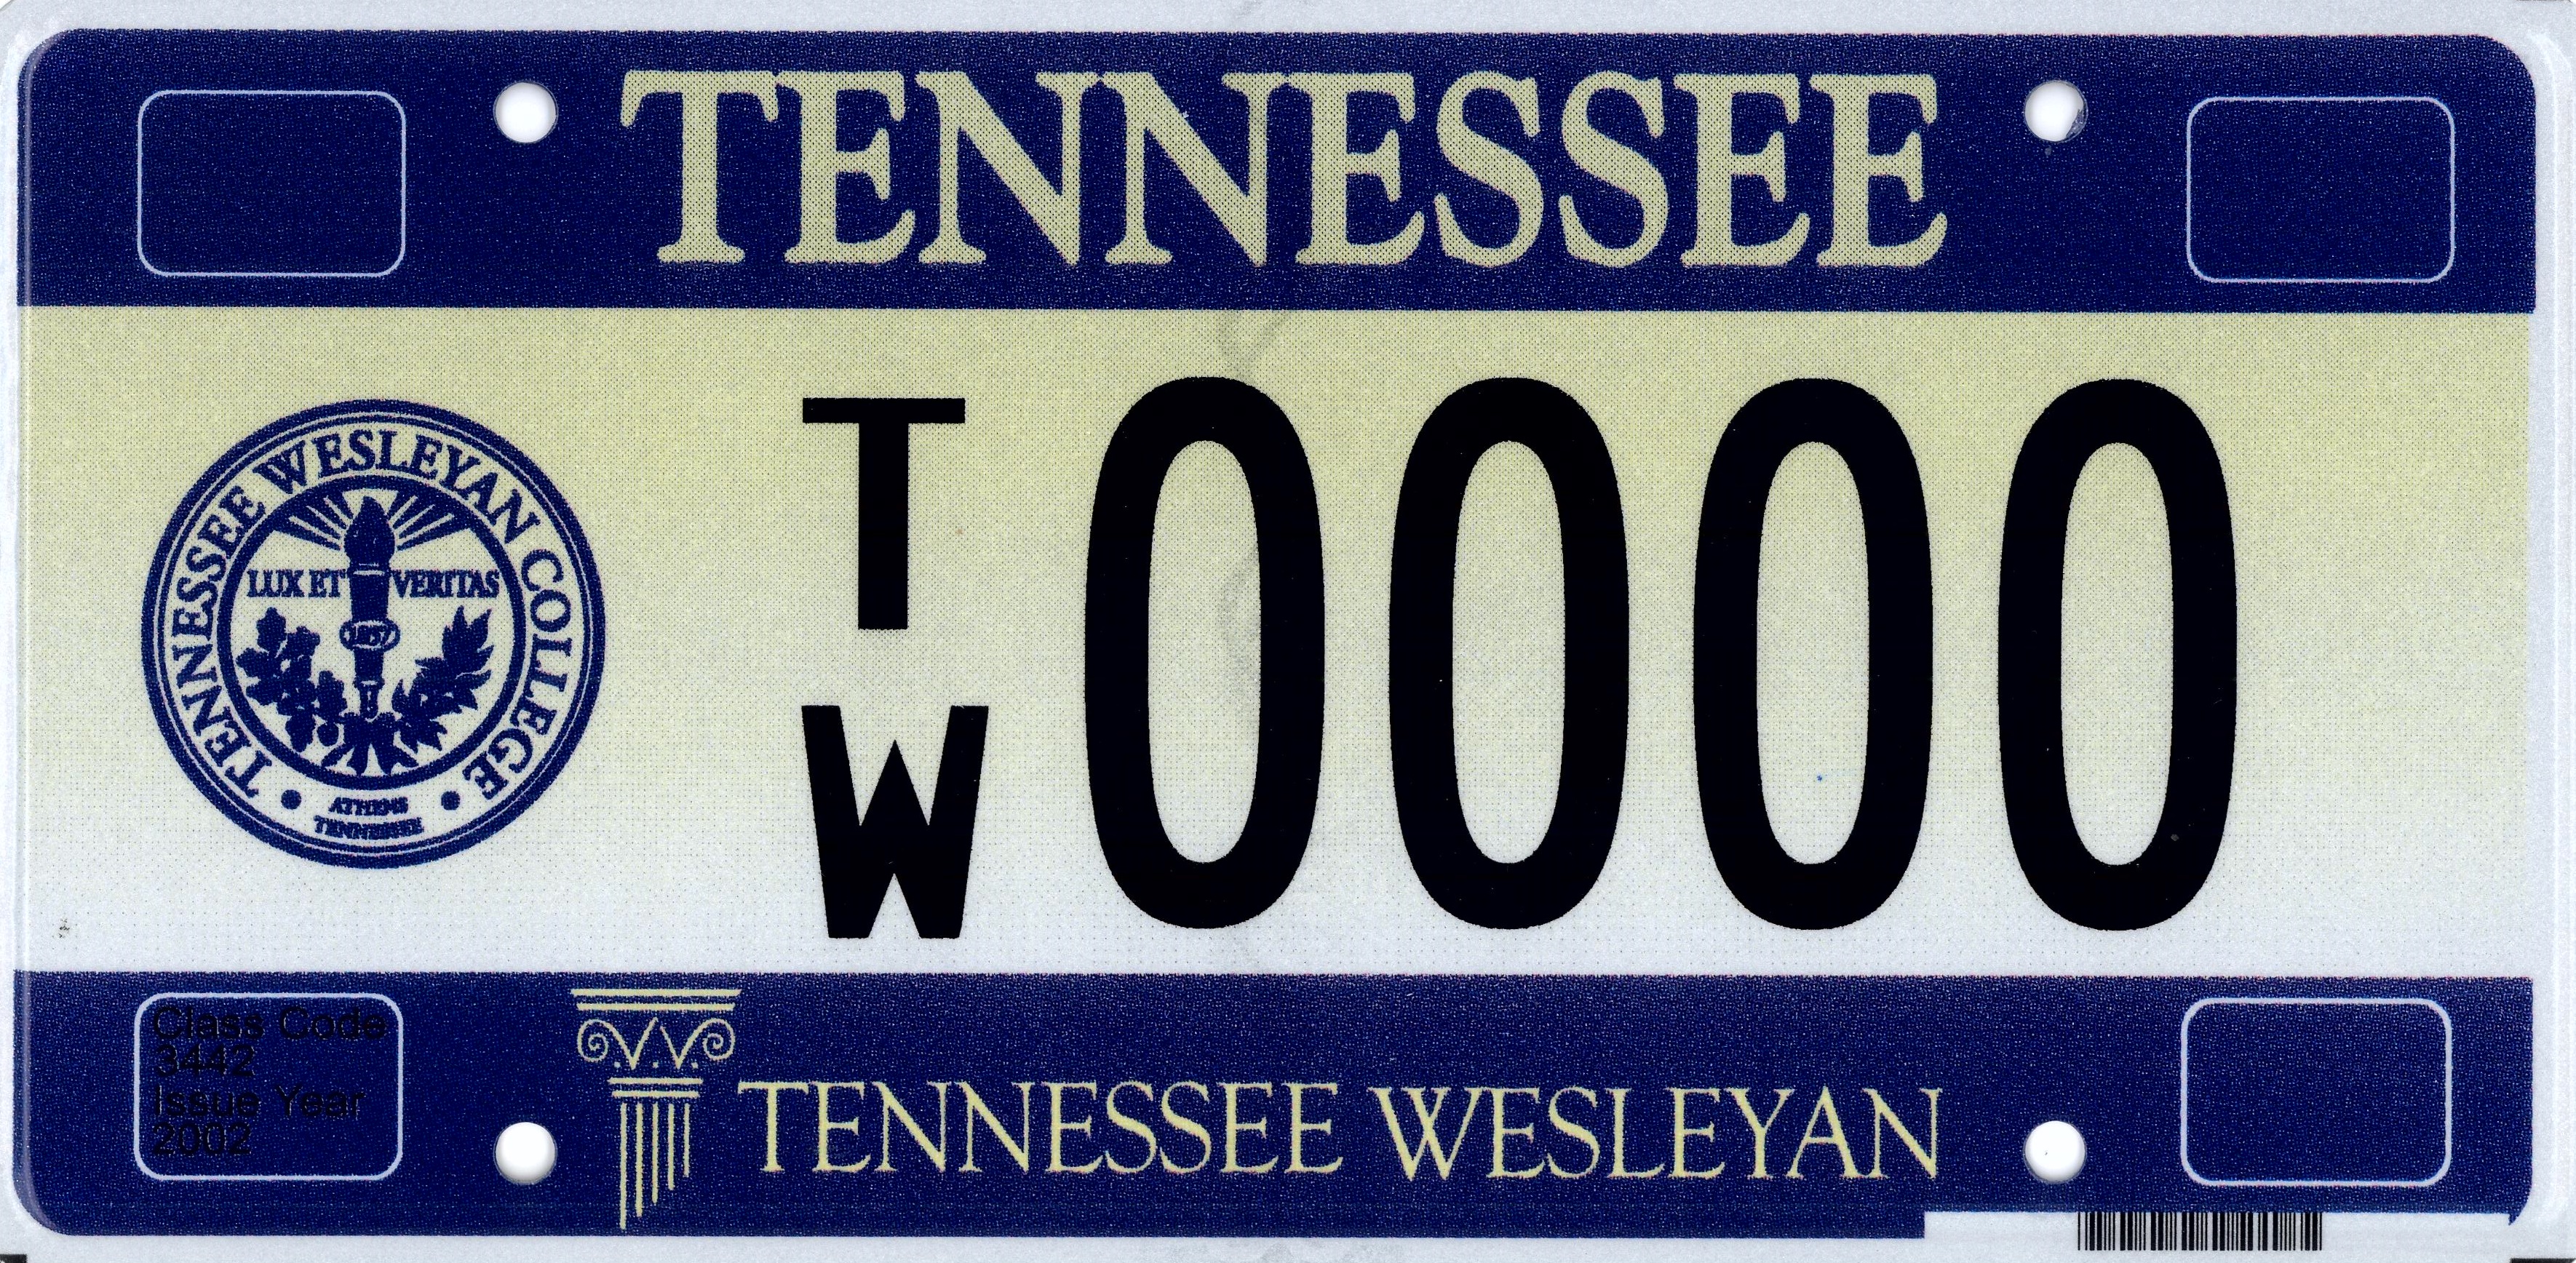 Tennessee_Wesleyan_College_cls_3442.jpg